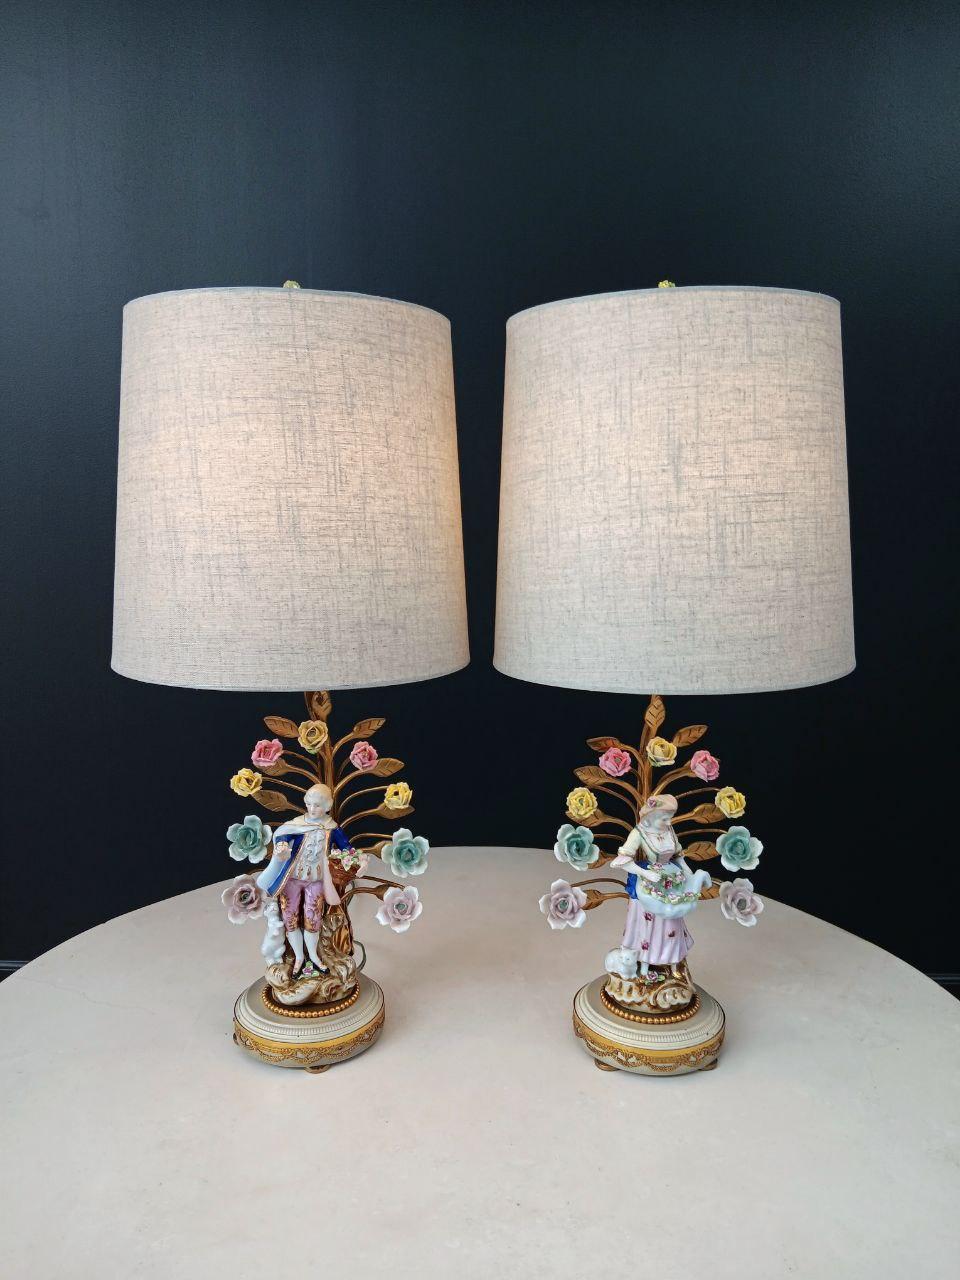 Original Vintage Condition

Lampes :
27 